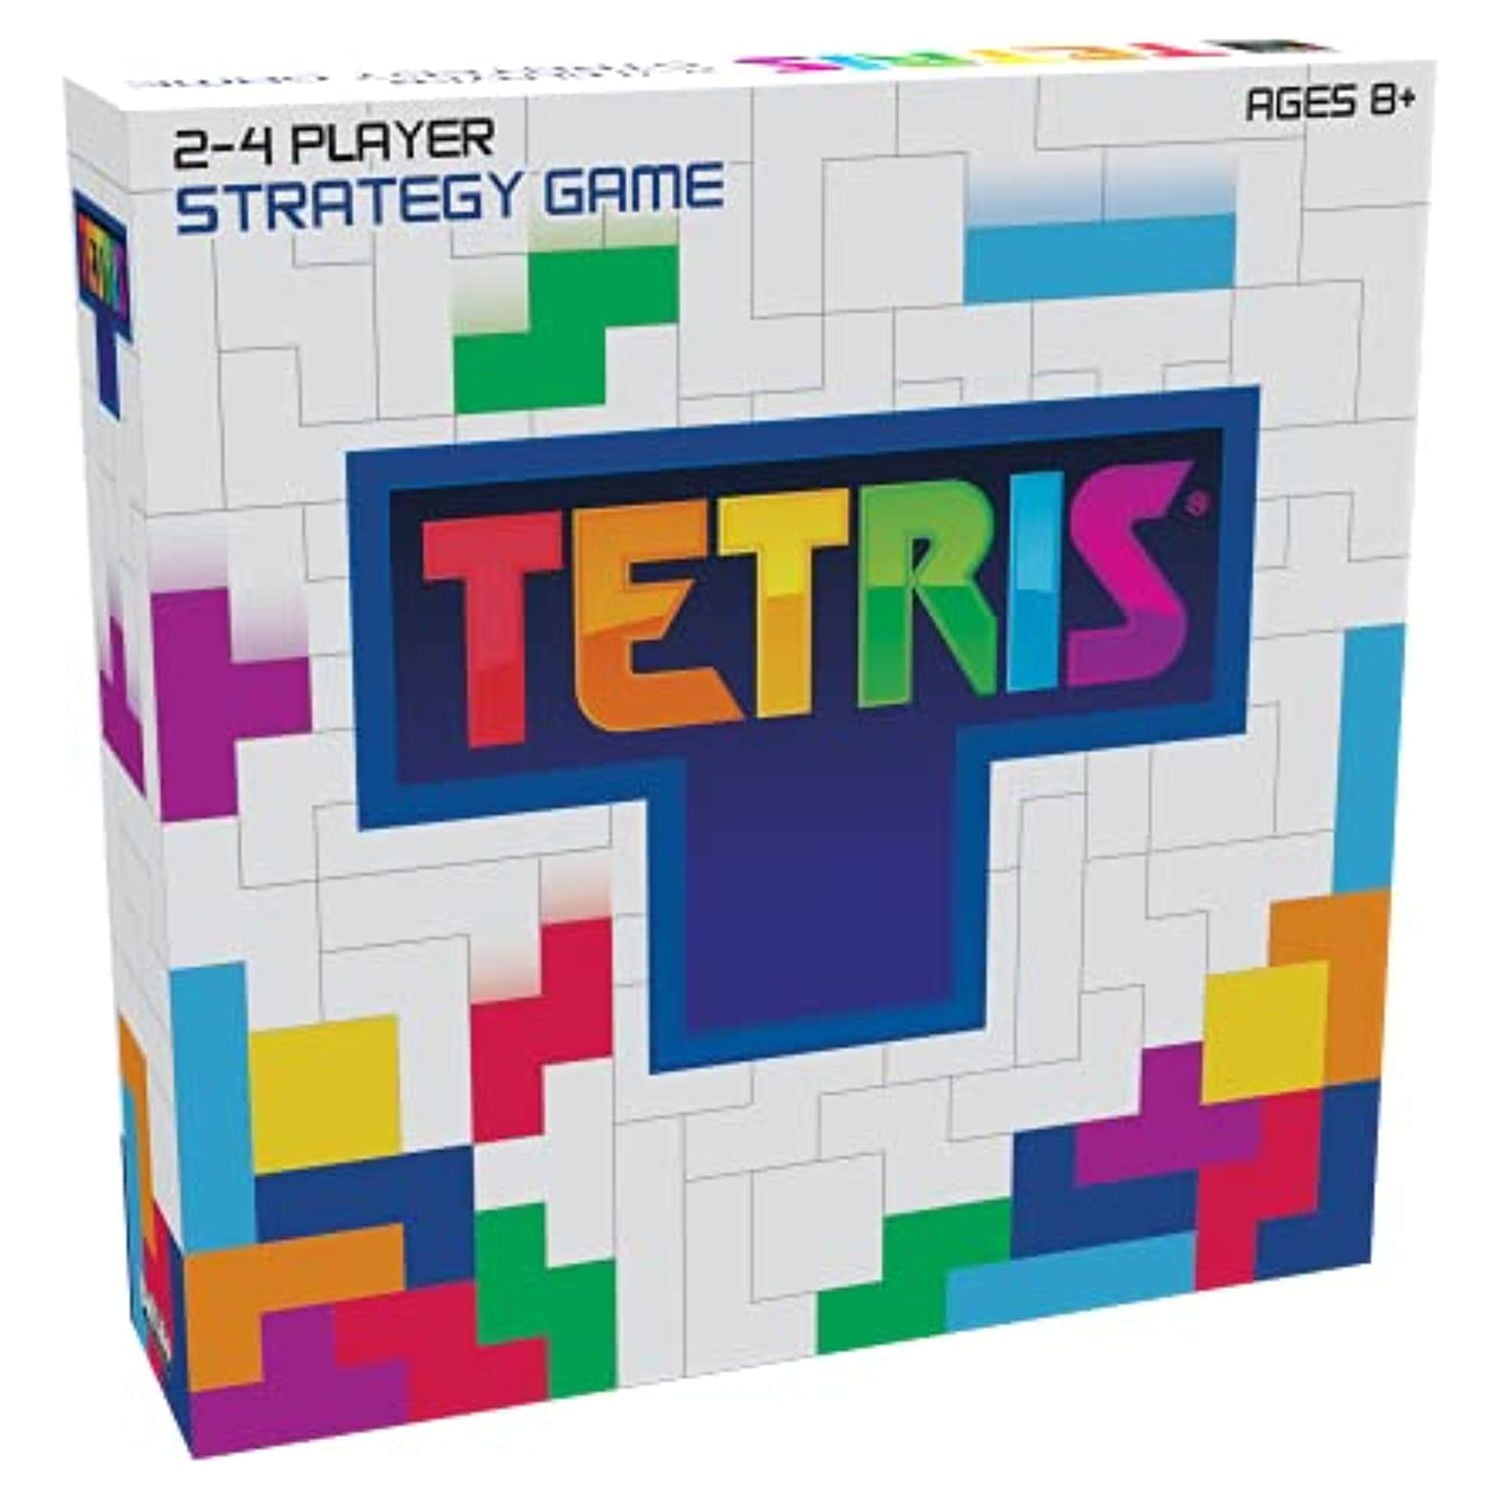 The Game Tetris